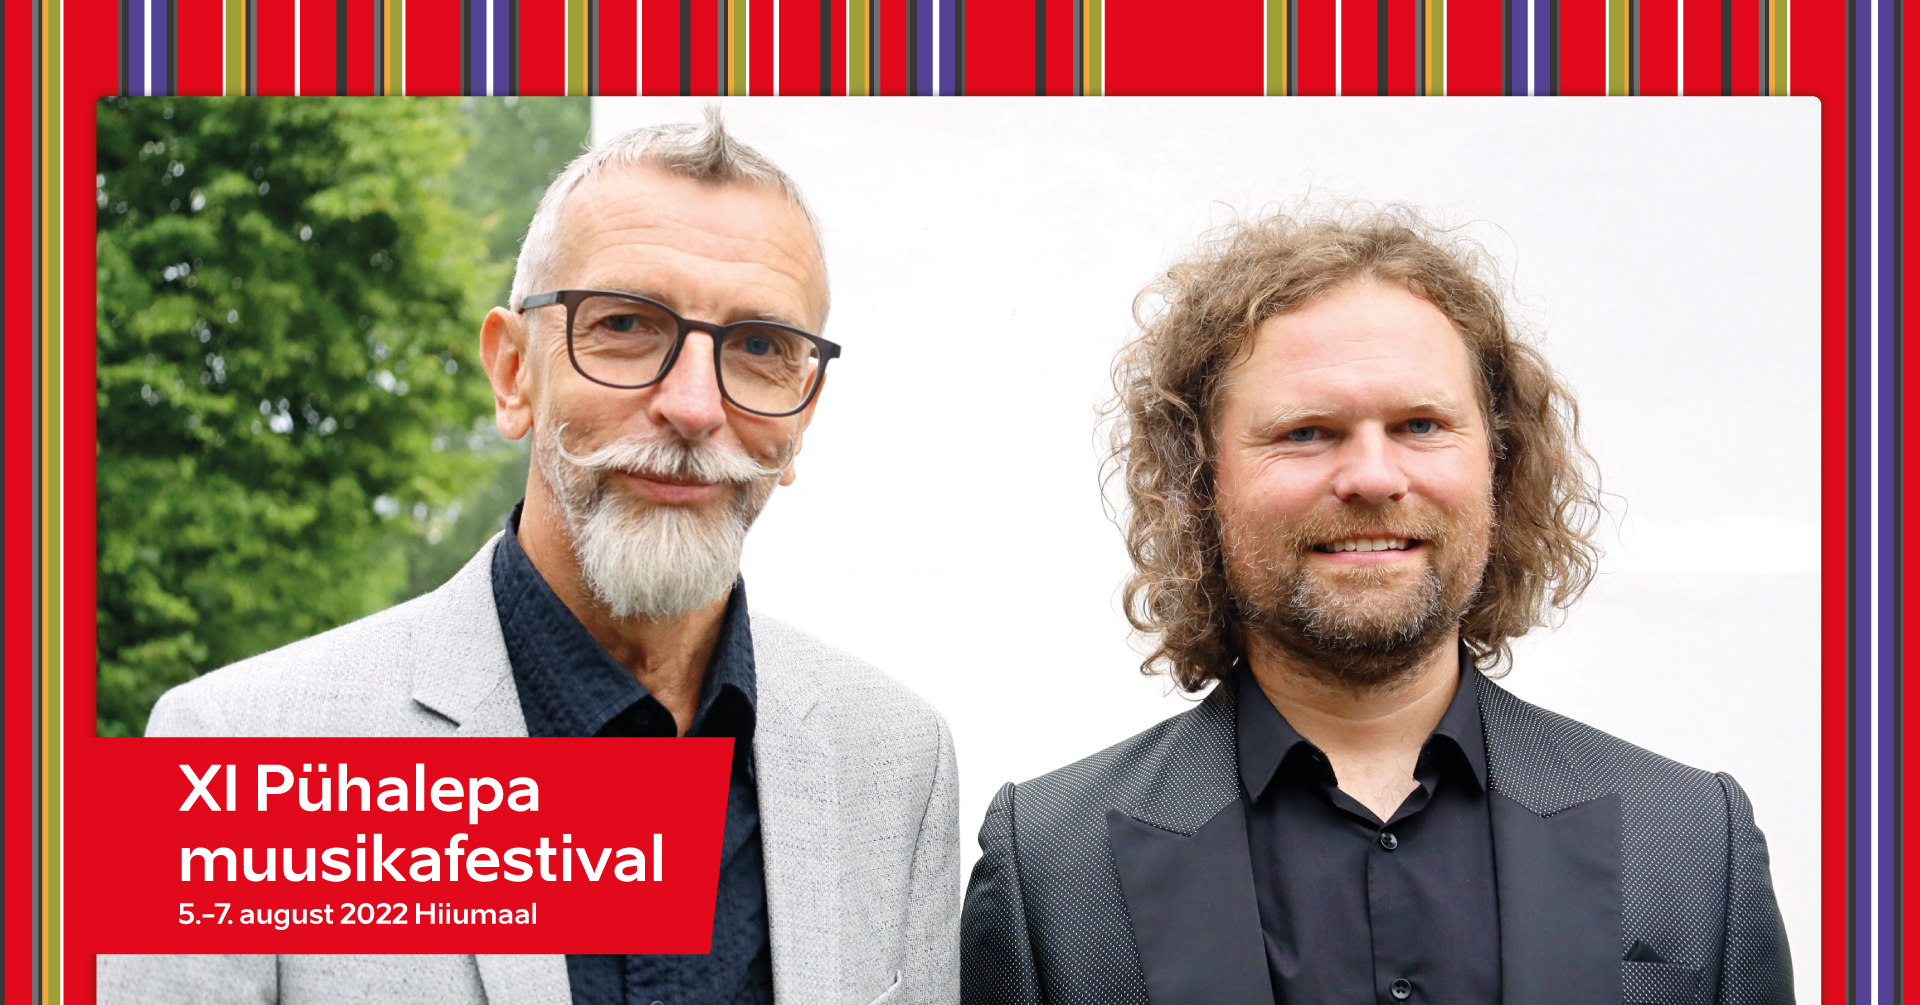 The post Reedel algab XI Pühalepa muusikafestival appeared first on Kerema Kultuurikoda.